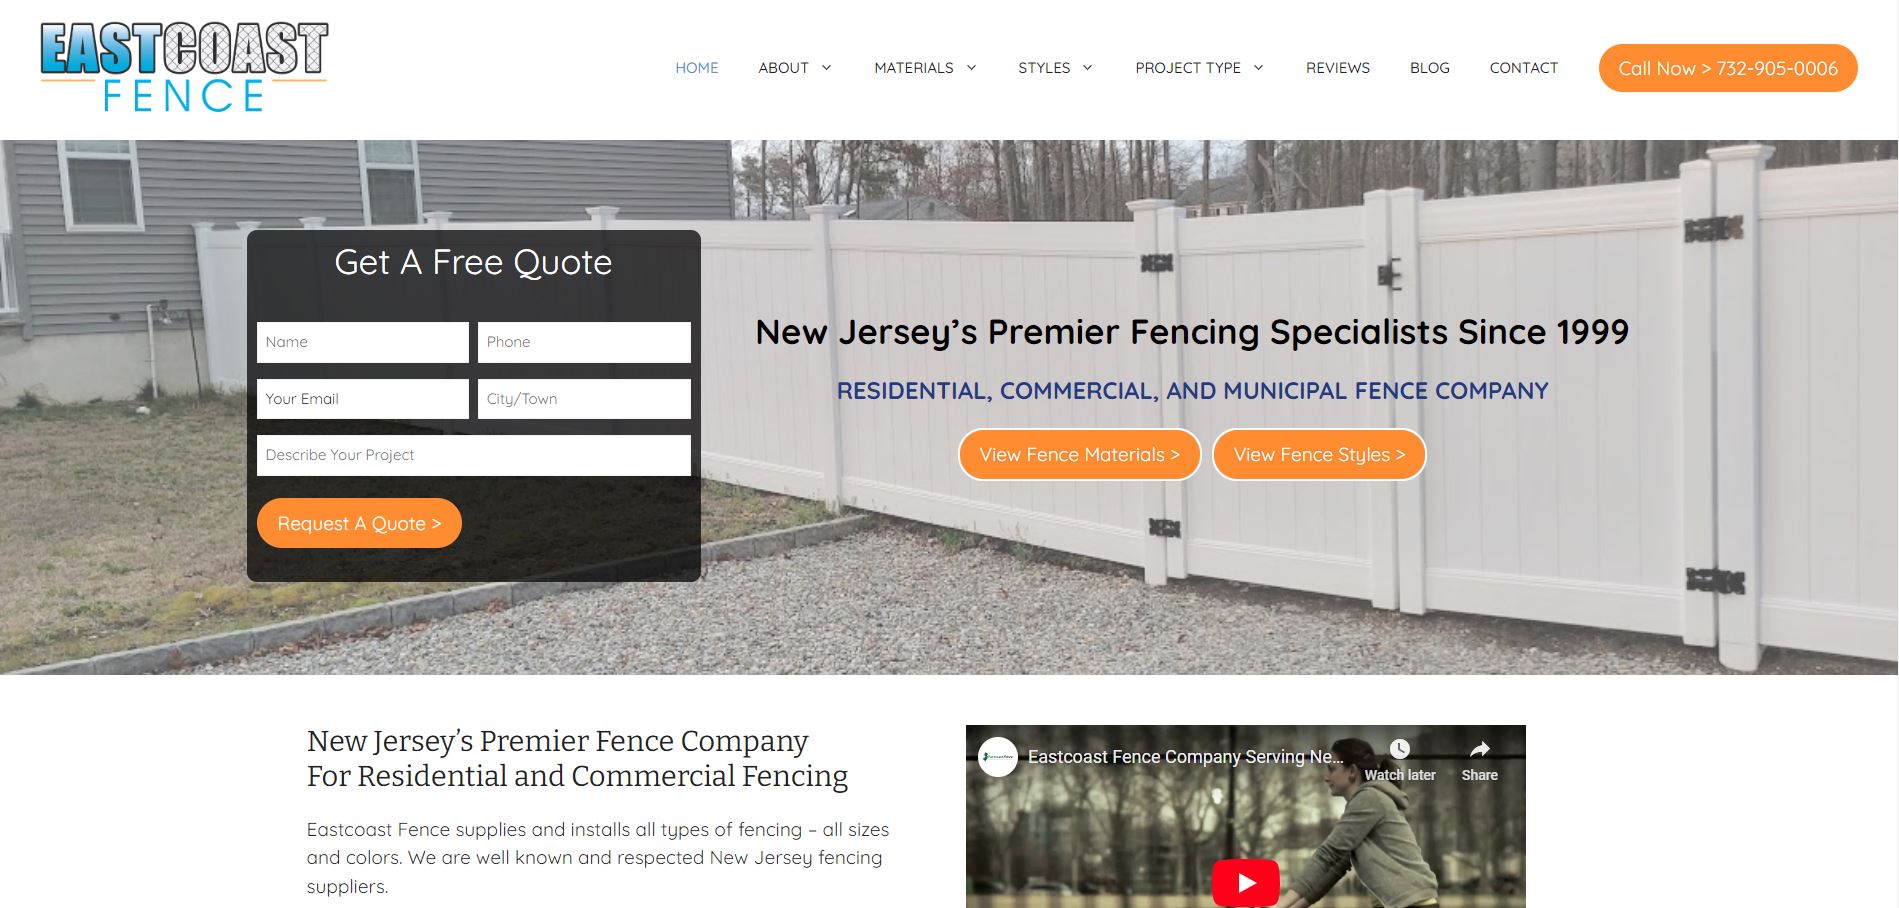 Eastcoast-fence.com Has A New Website!